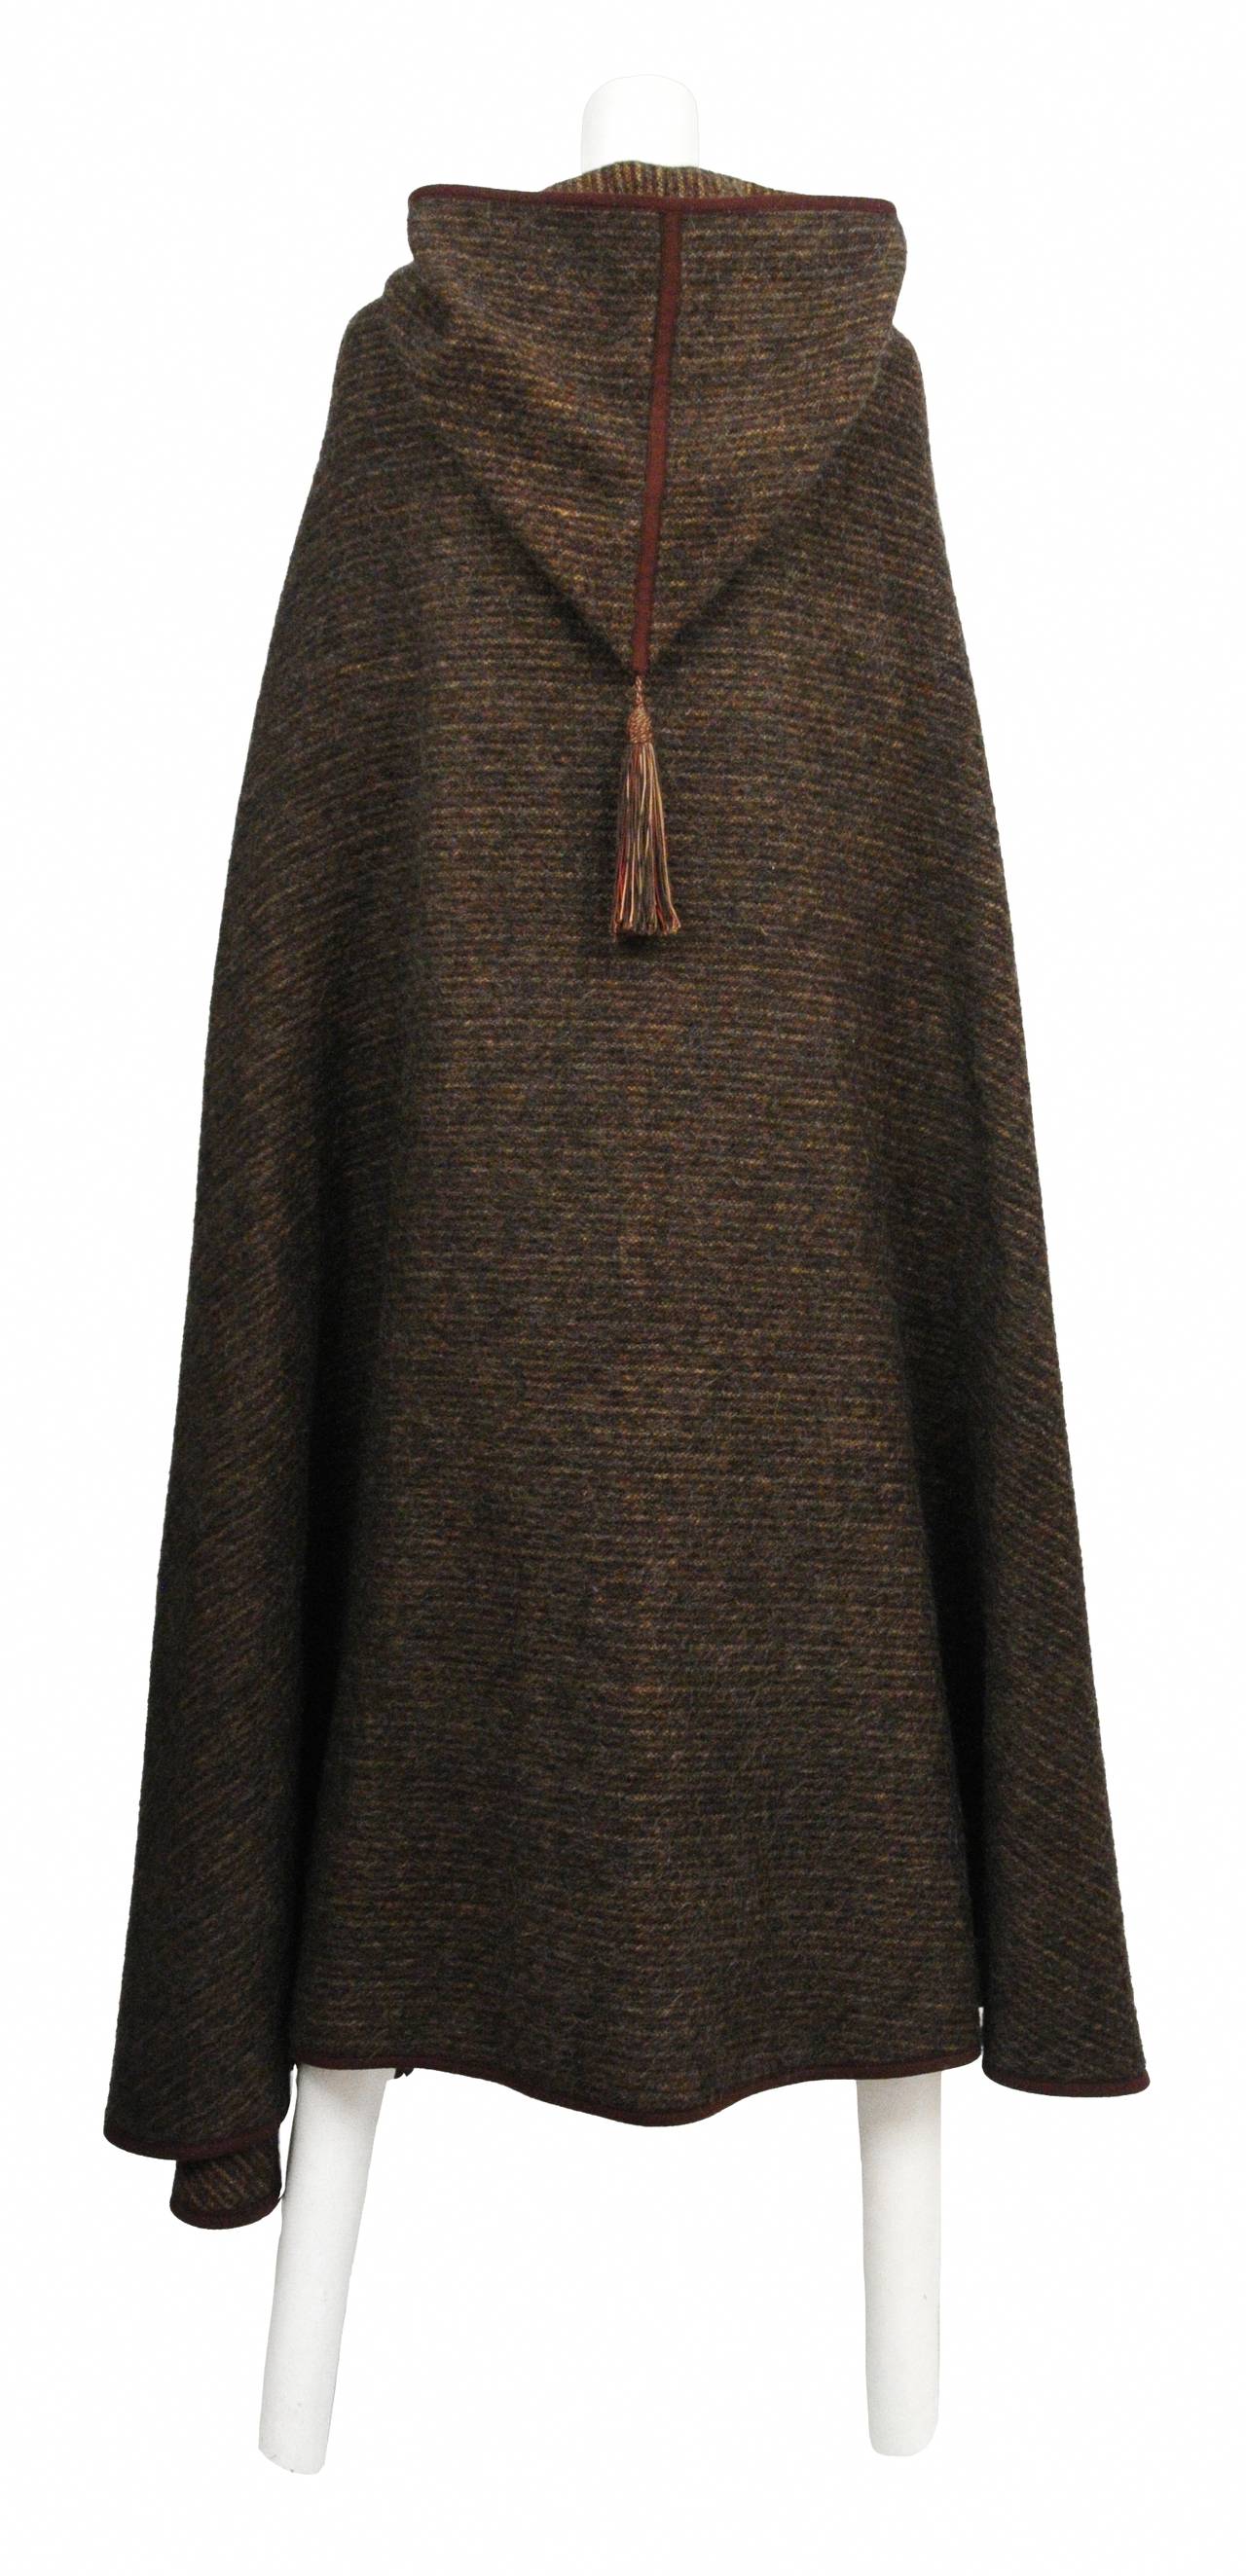 Vintage Yves Saint Laurent brown striped wool hooded cape cloak with tassel.